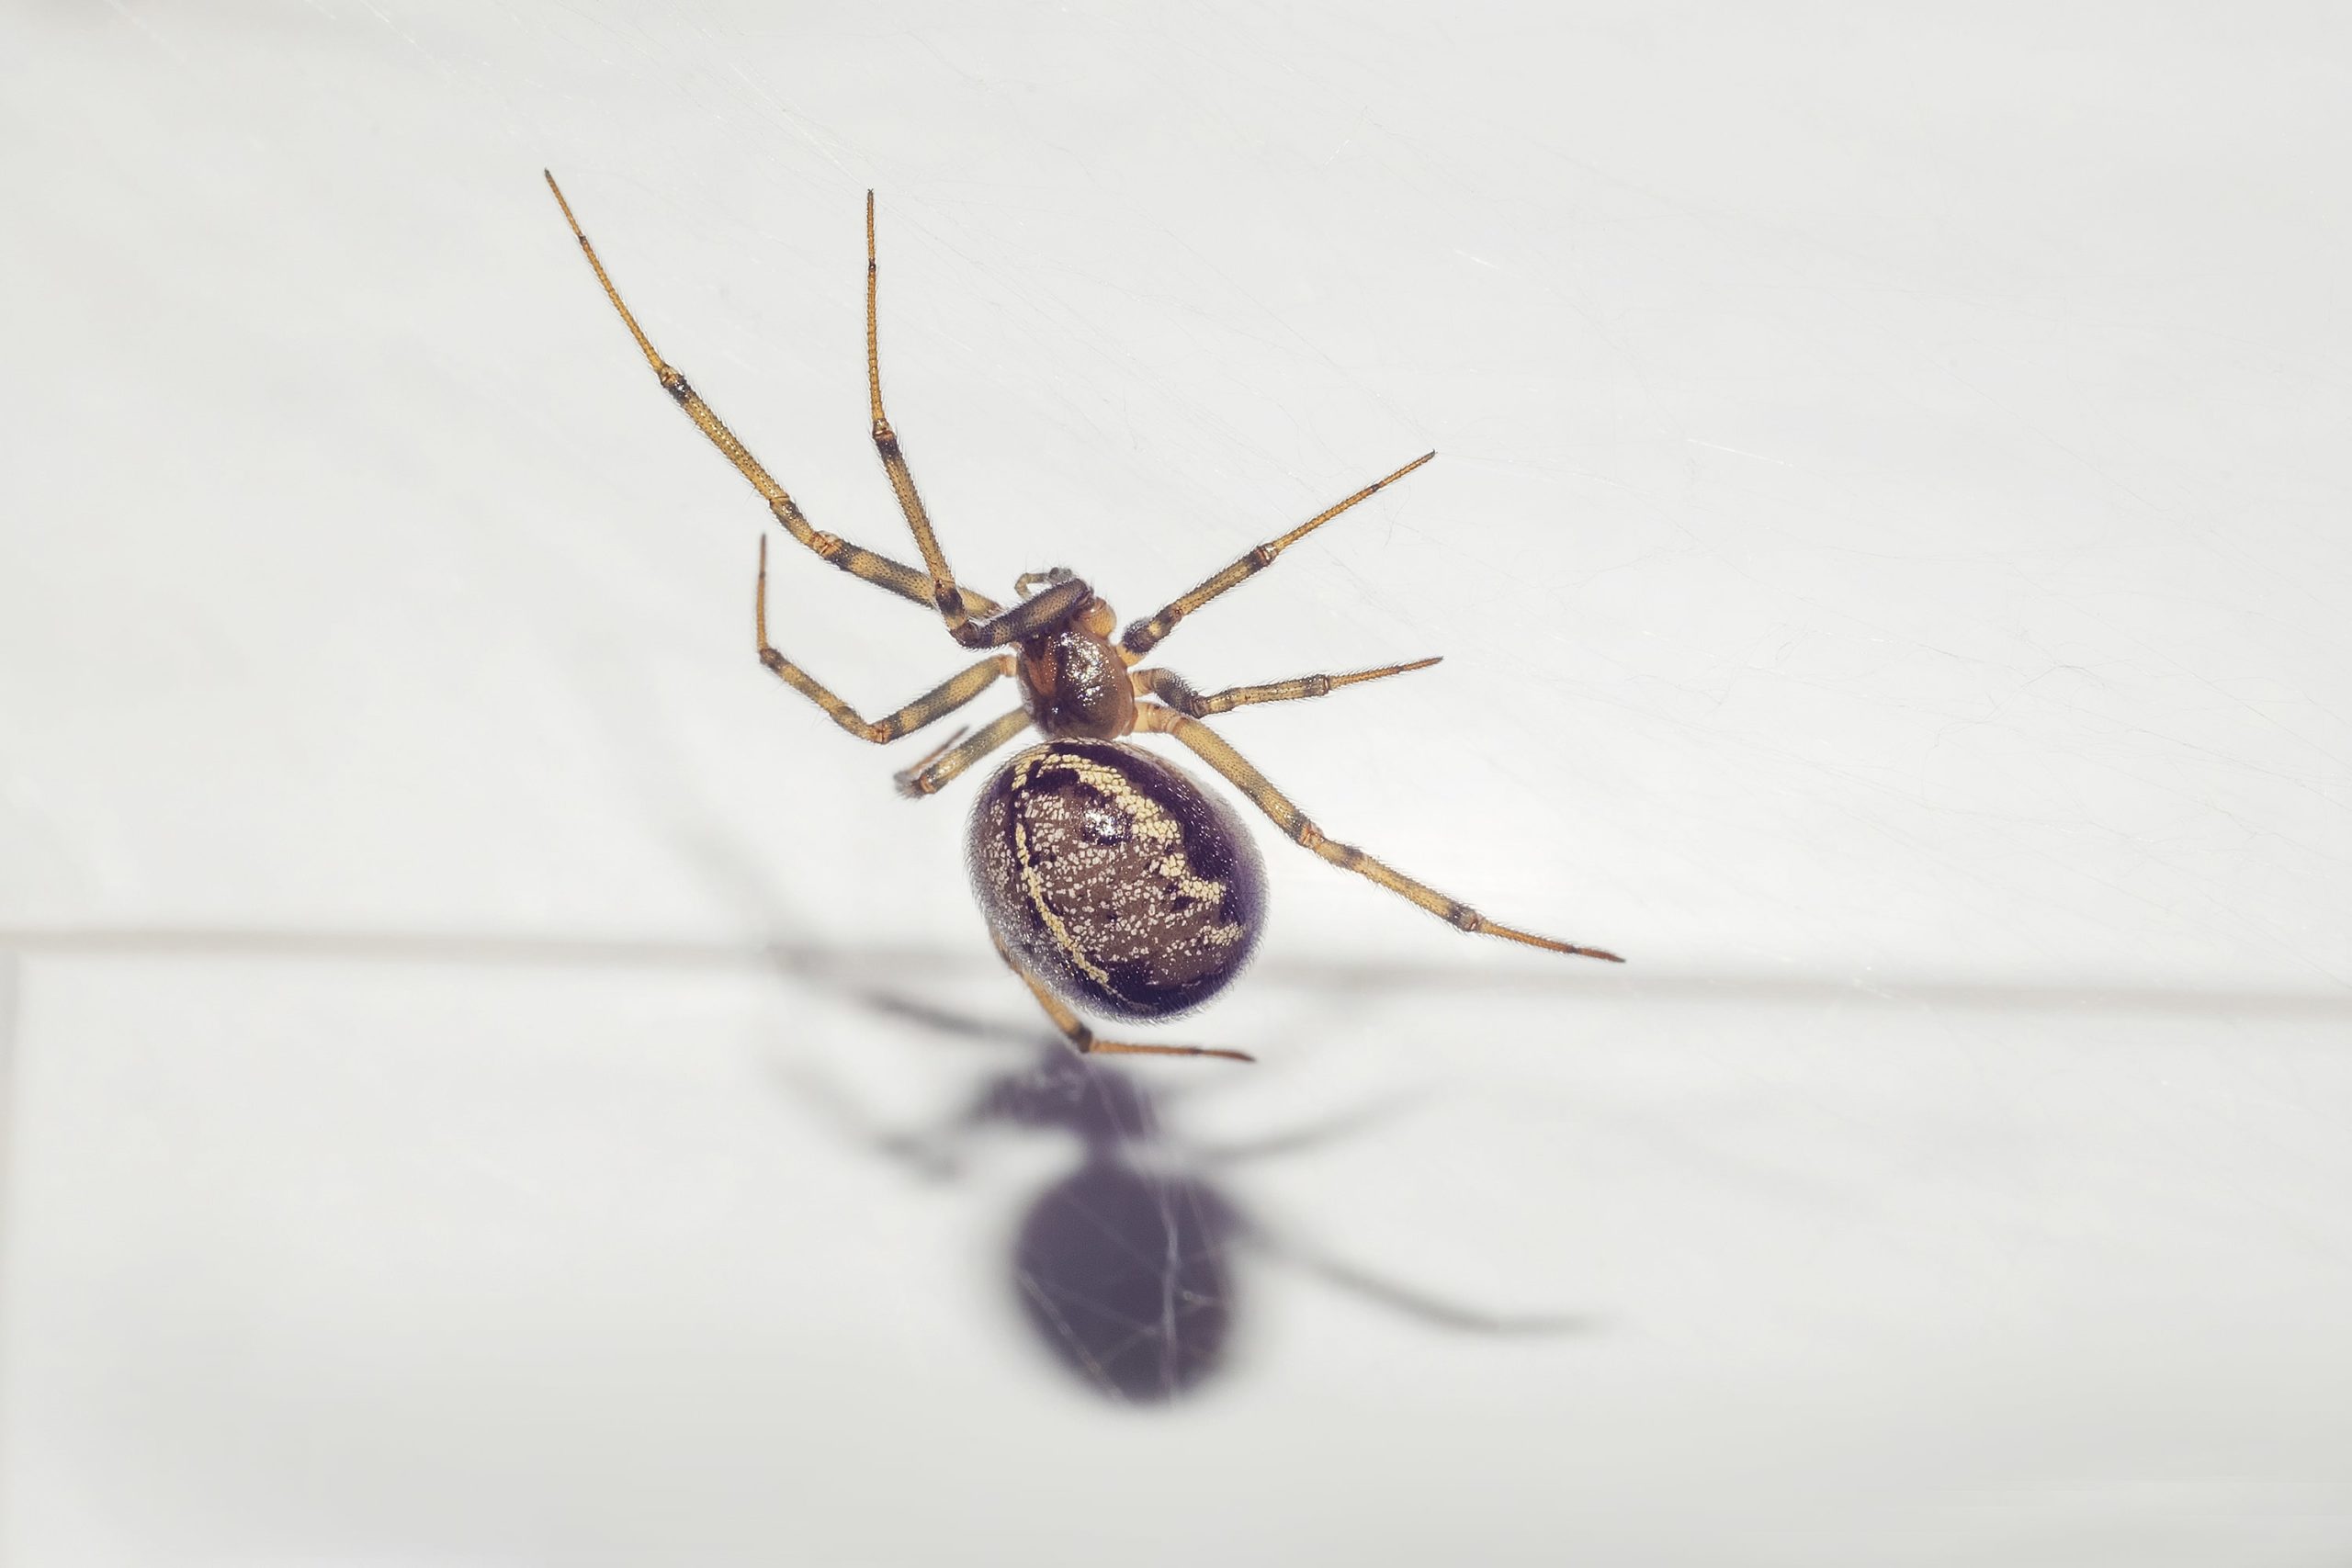 Lire la suite à propos de l’article Les dangers d’un piège à araignées